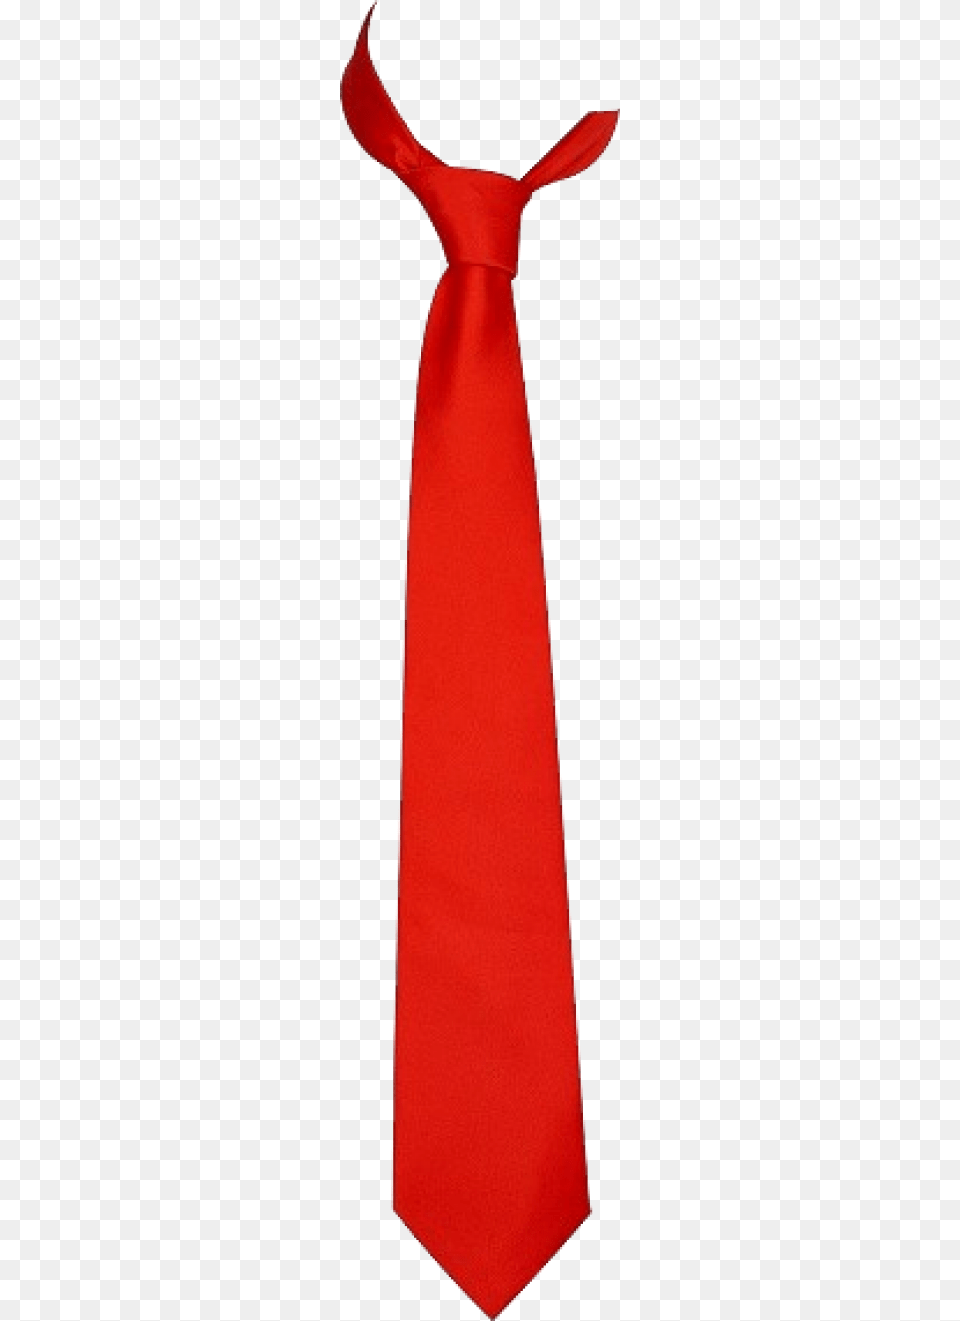 Red Tie, Accessories, Formal Wear, Necktie Free Png Download